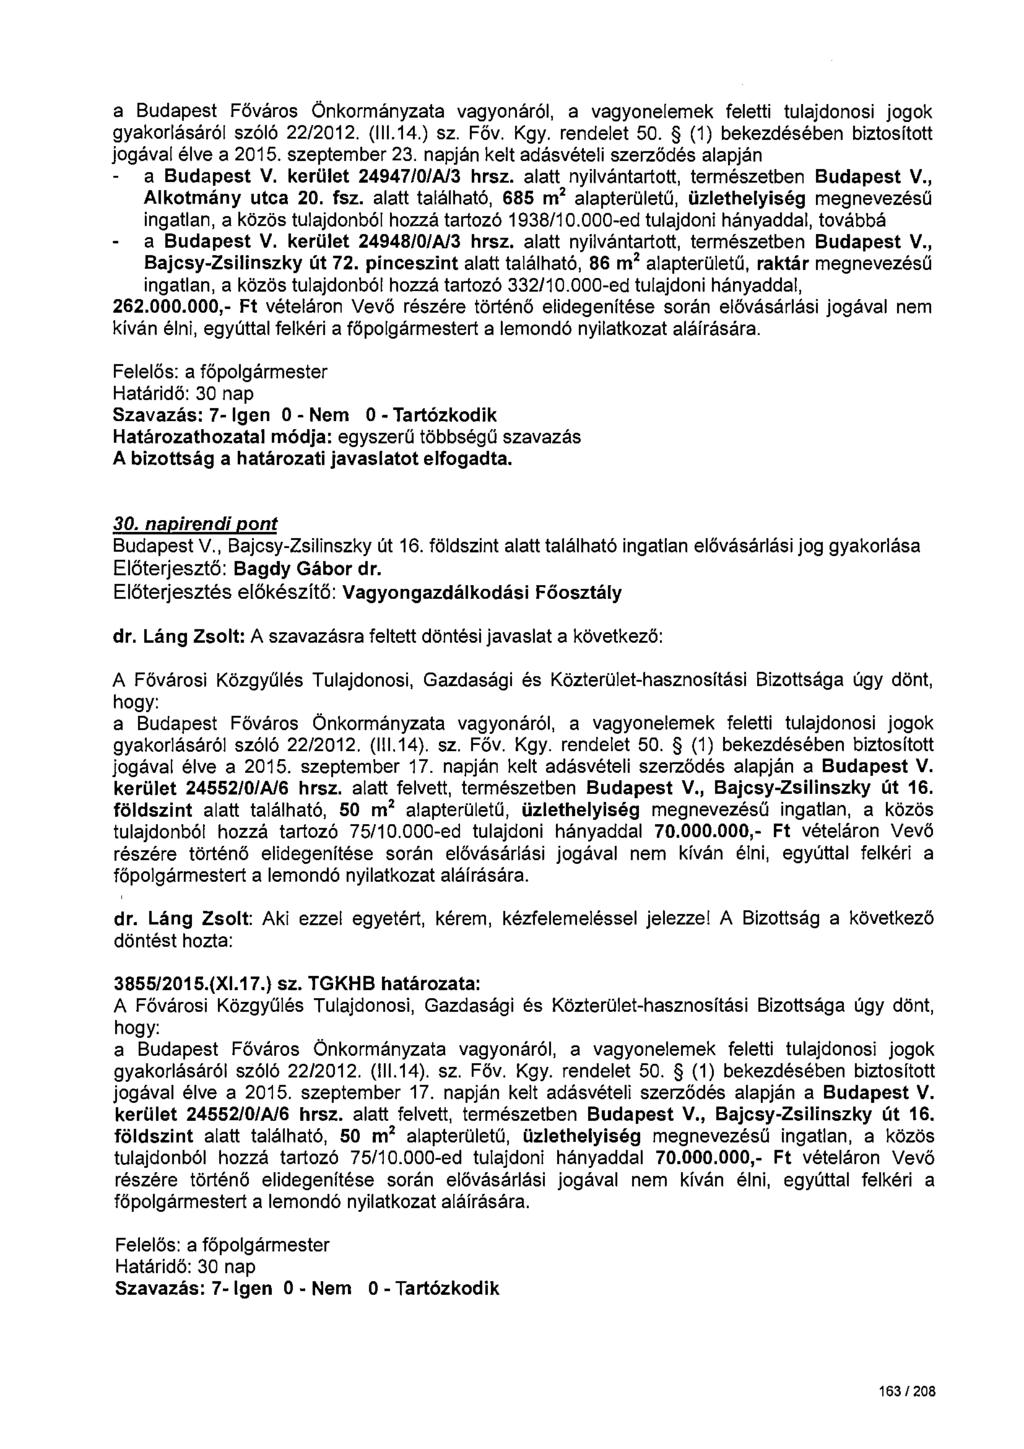 gyakorlásáról szóló 22/2012. (111.14.) sz. Föv. Kgy. rendelet 50. (1) bekezdésében biztosított jogával élve a 2015. szeptember 23. napján kelt adásvételi szerződés alapján a Budapest V.